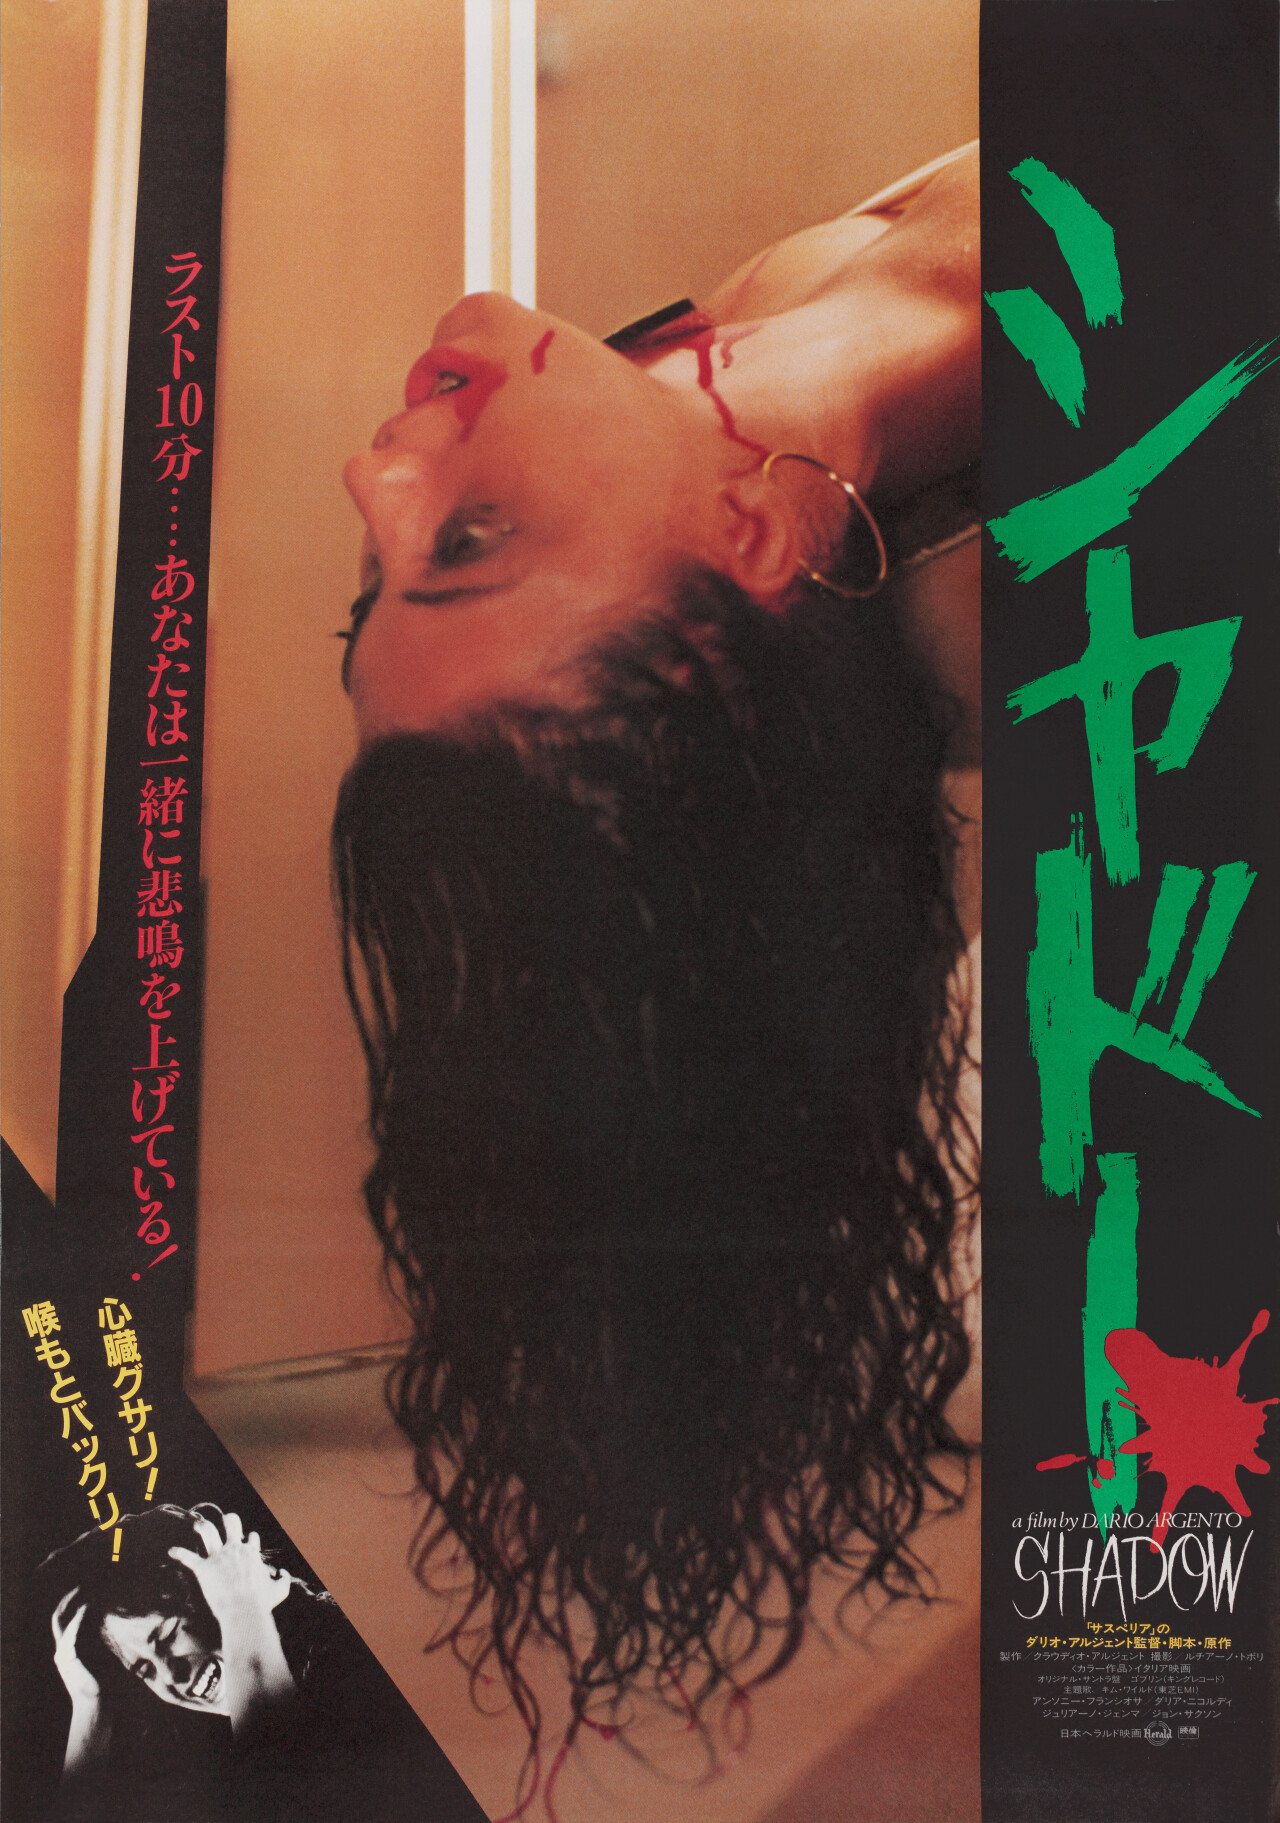 Дрожь (Tenebrae, 1982), режиссёр Дарио Ардженто, японский постер к фильму (ужасы, 1982 год)